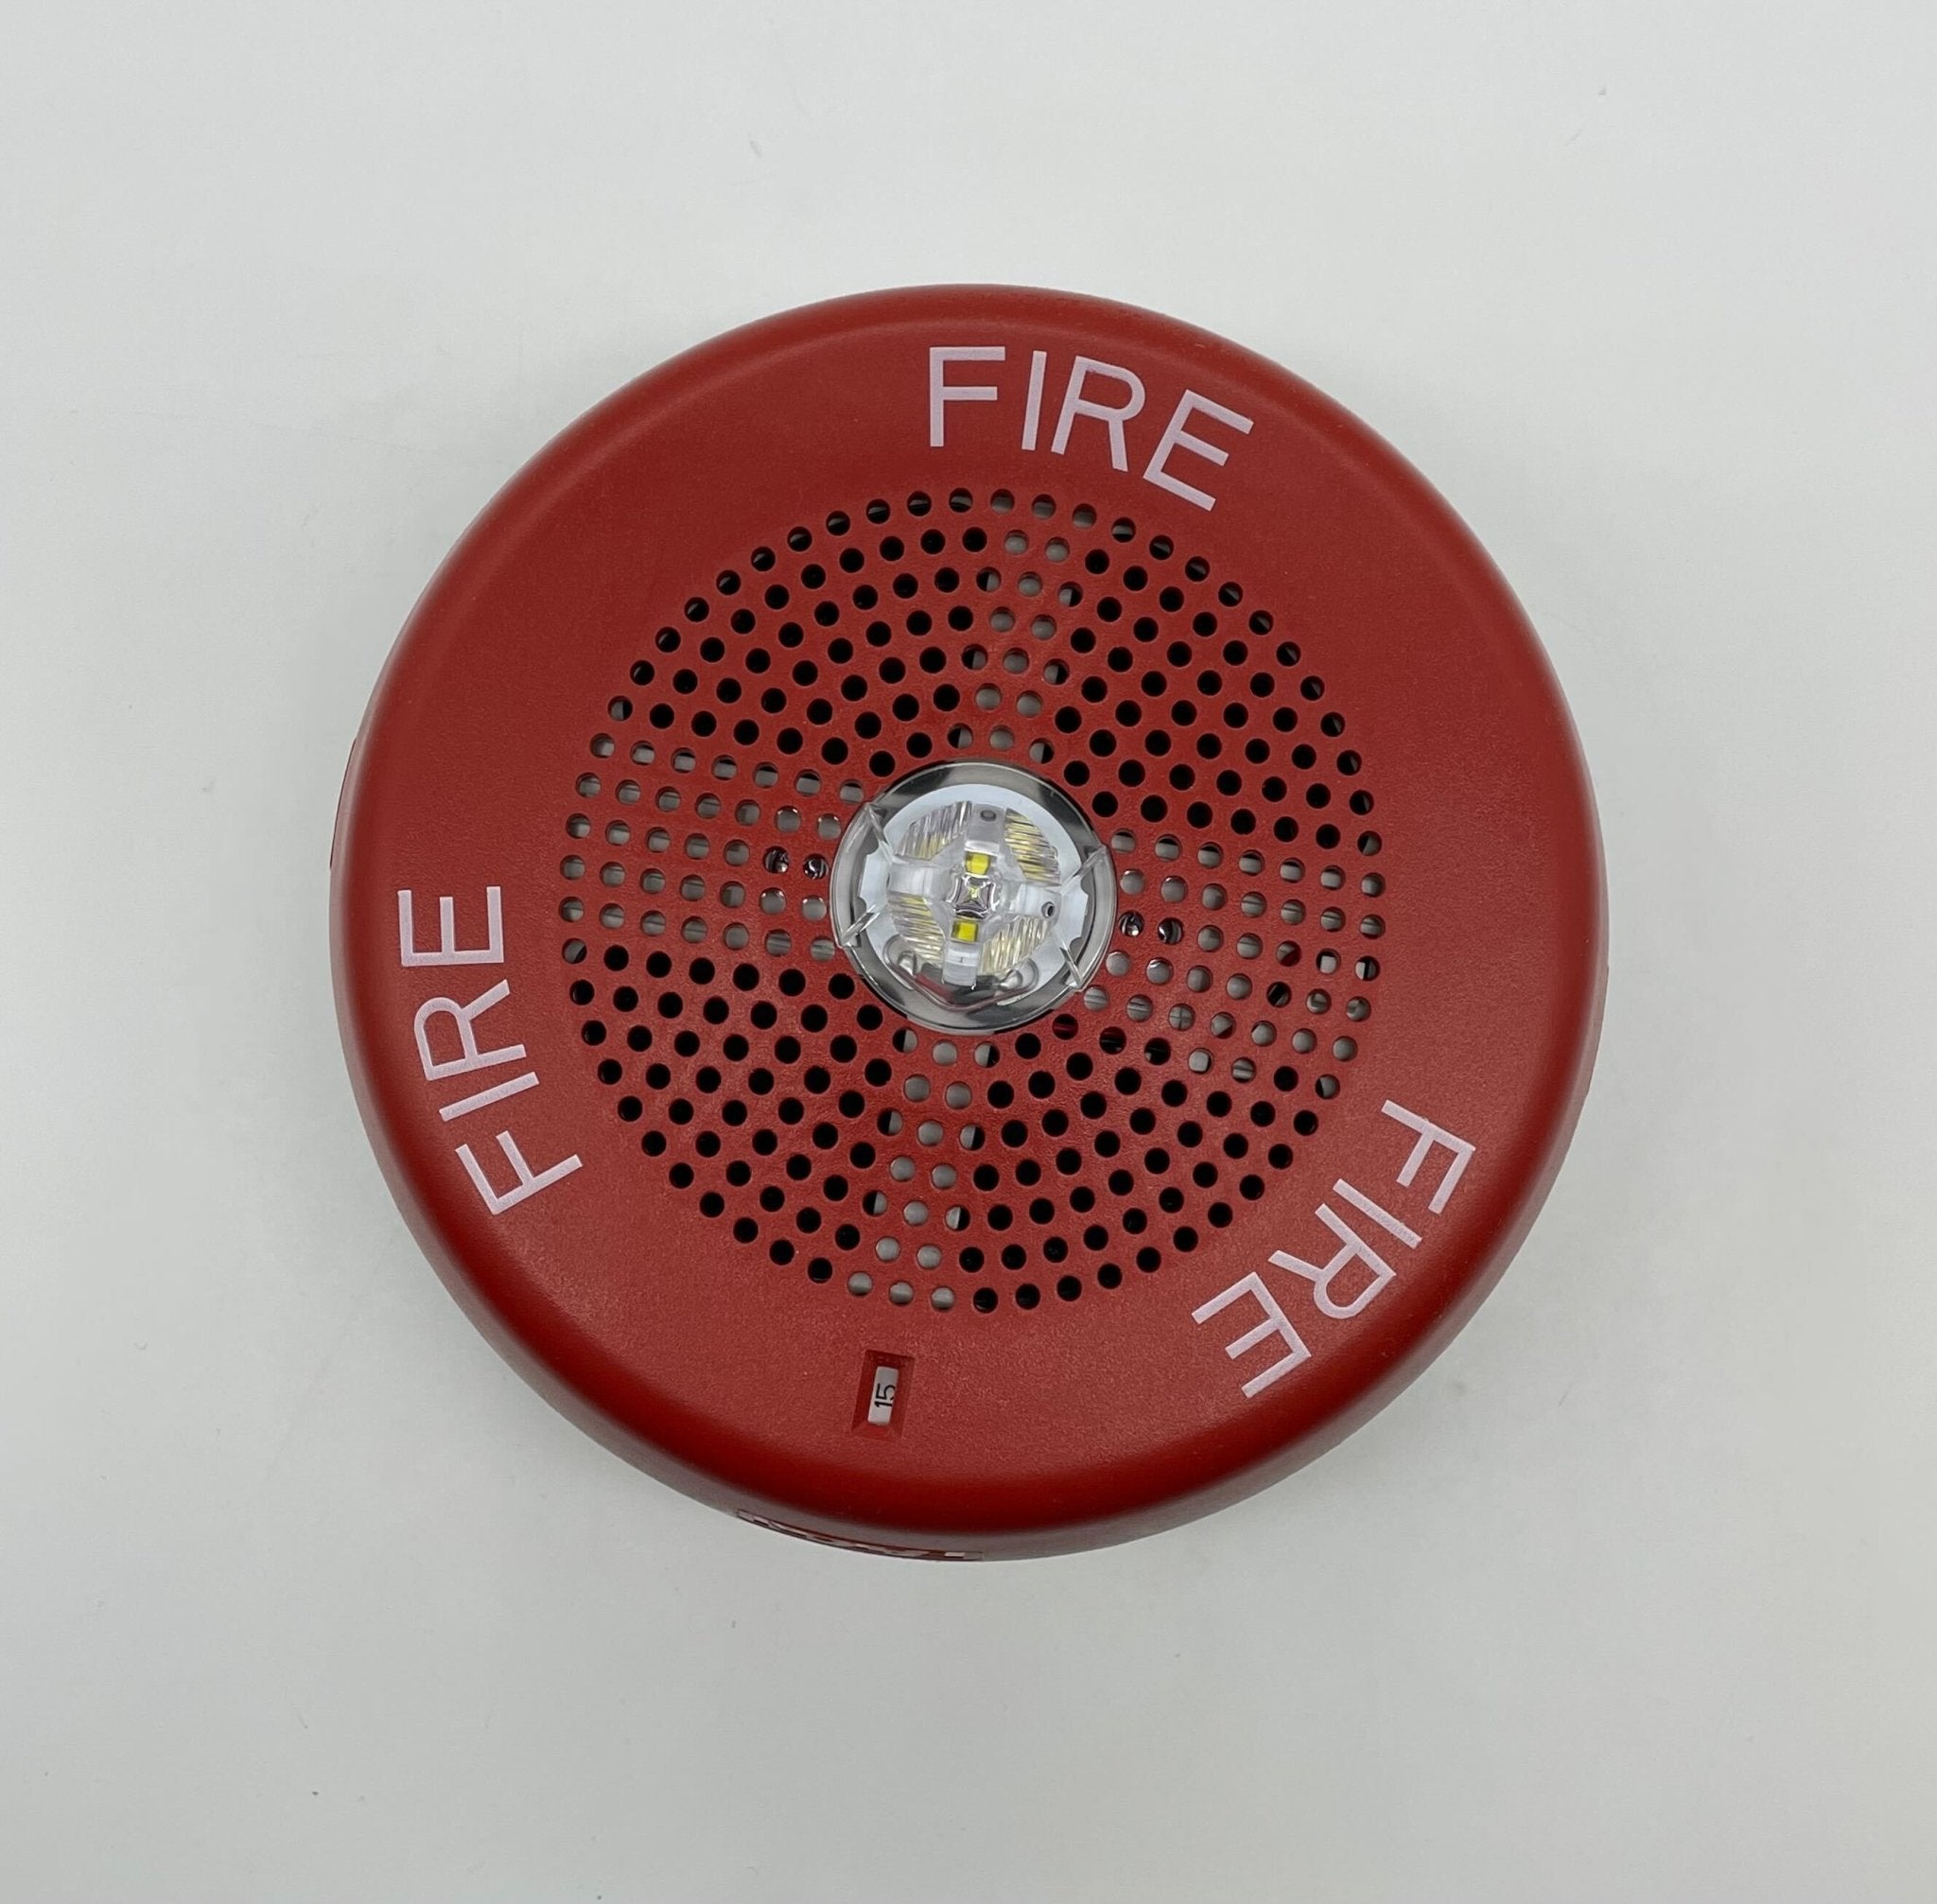 Wheelock LSPSTRC3 - The Fire Alarm Supplier